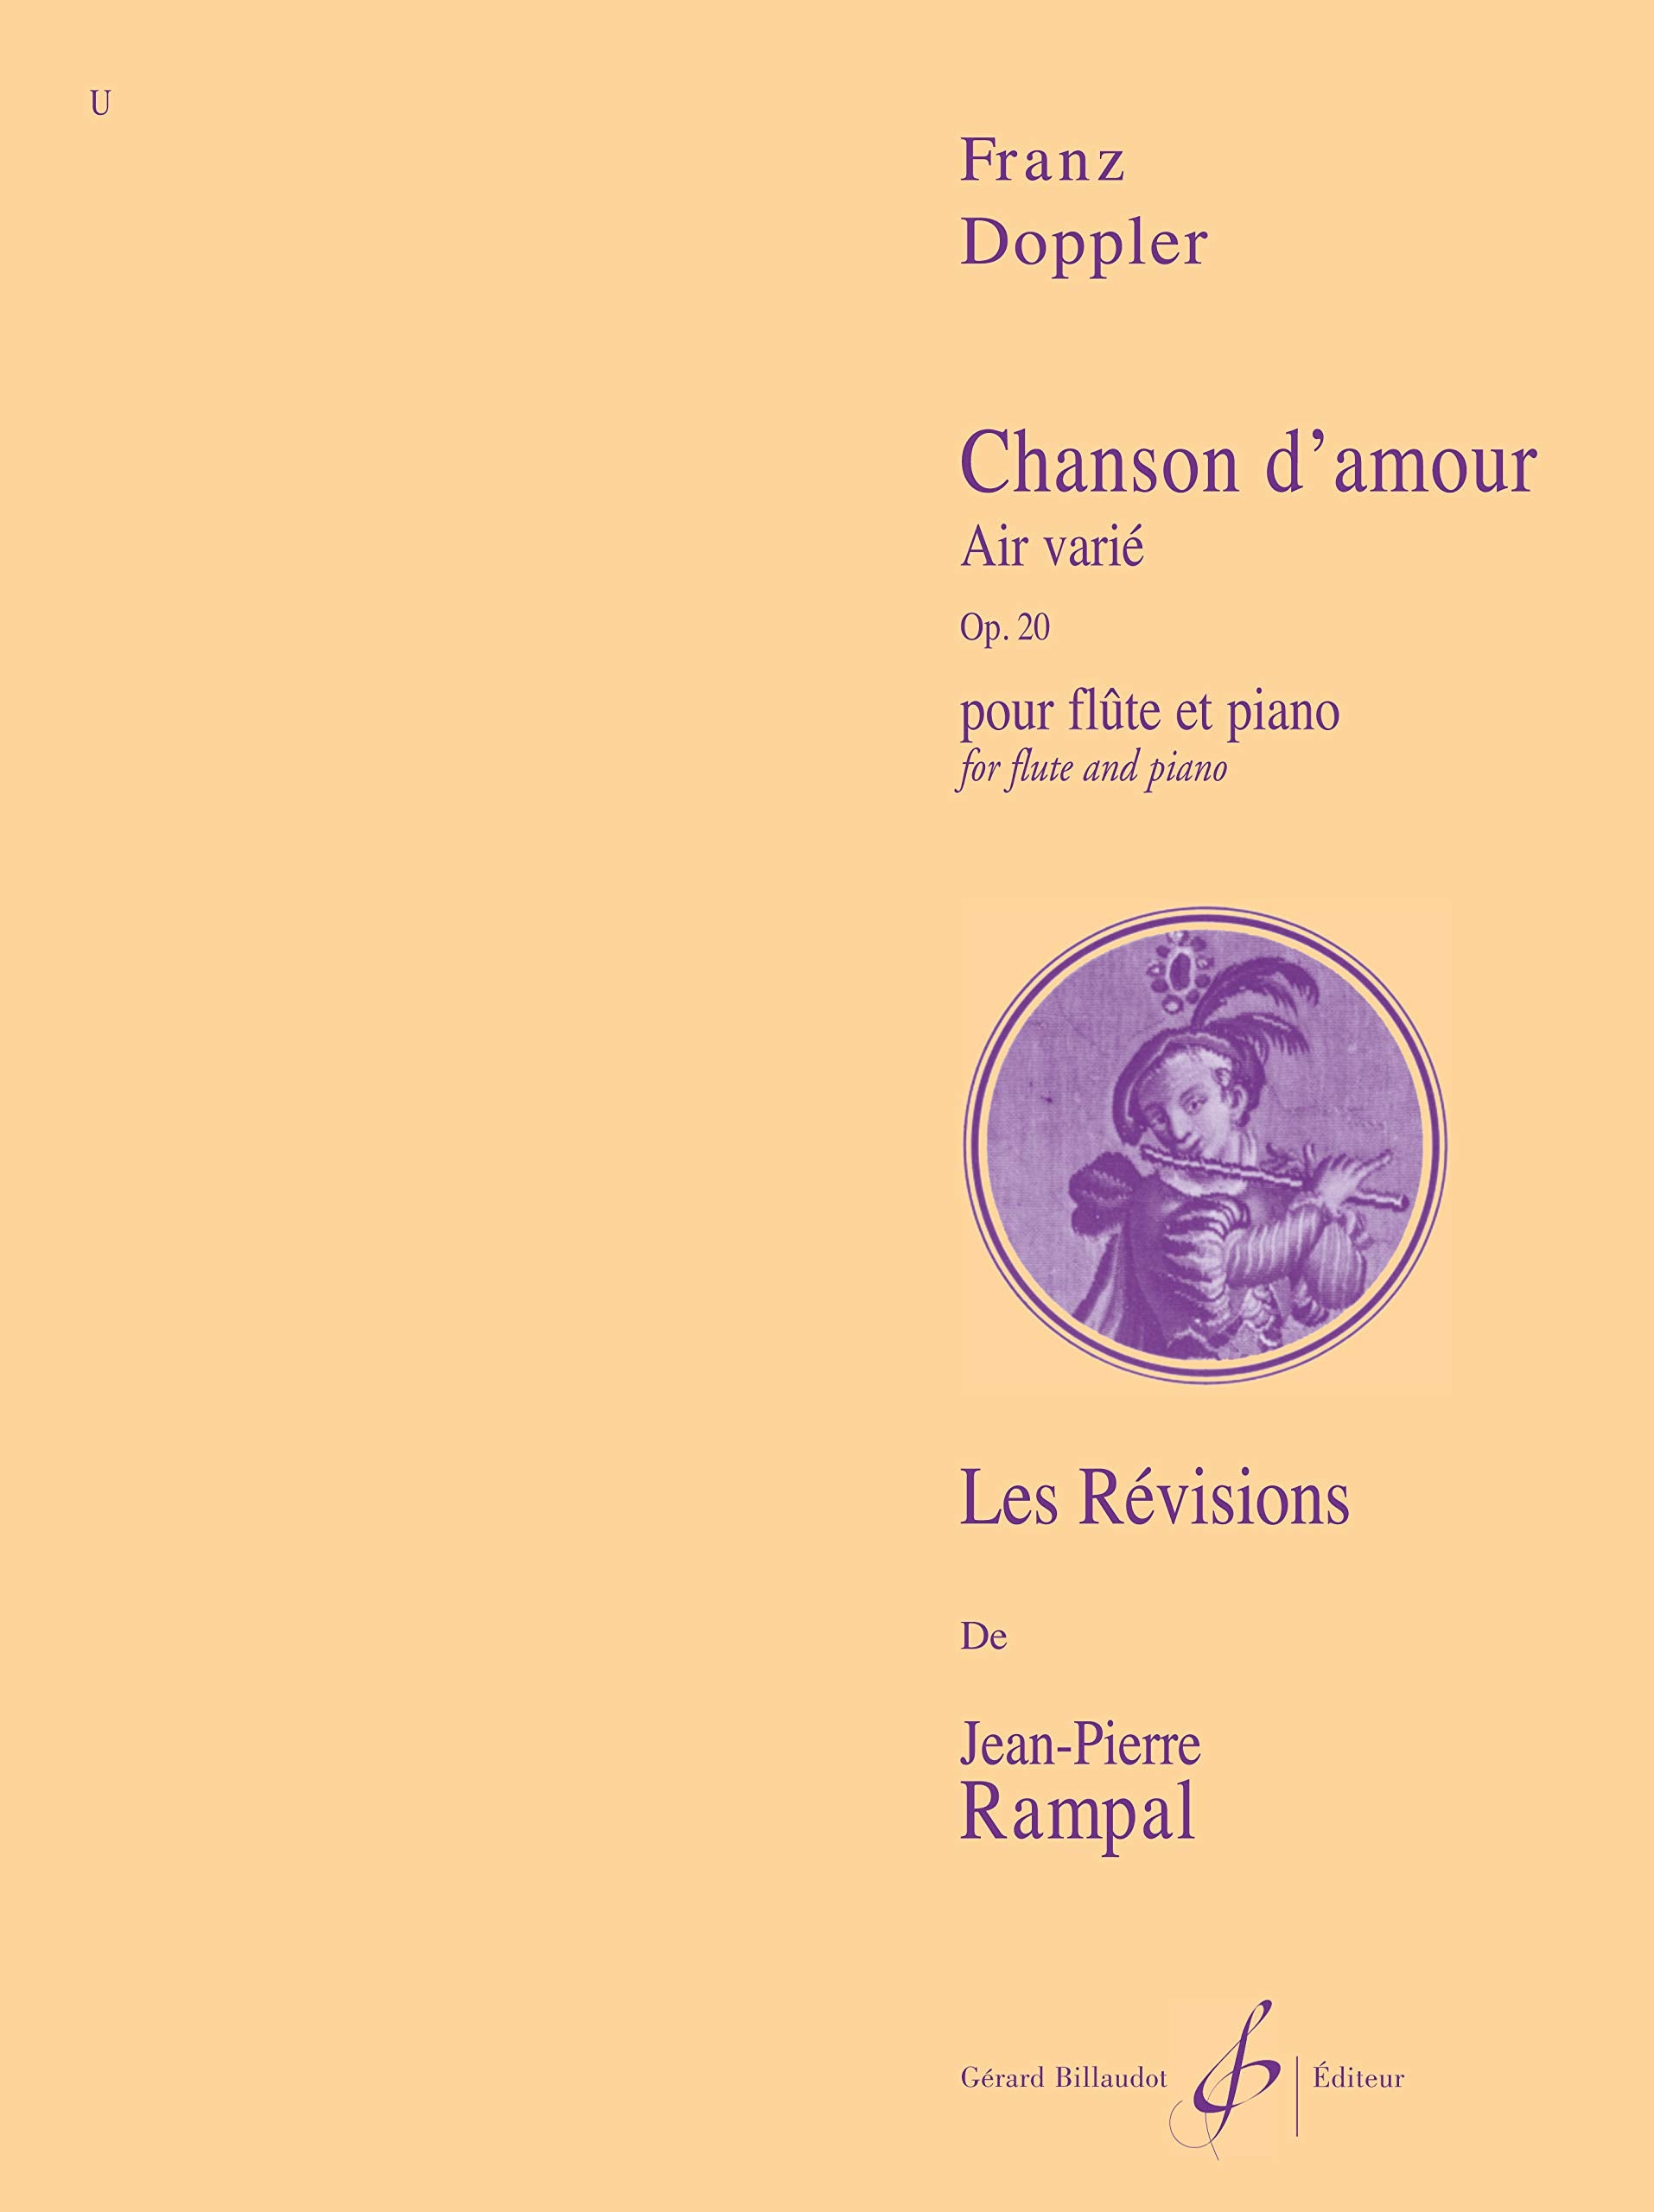 Doppler: Chanson d'amour, Op. 20